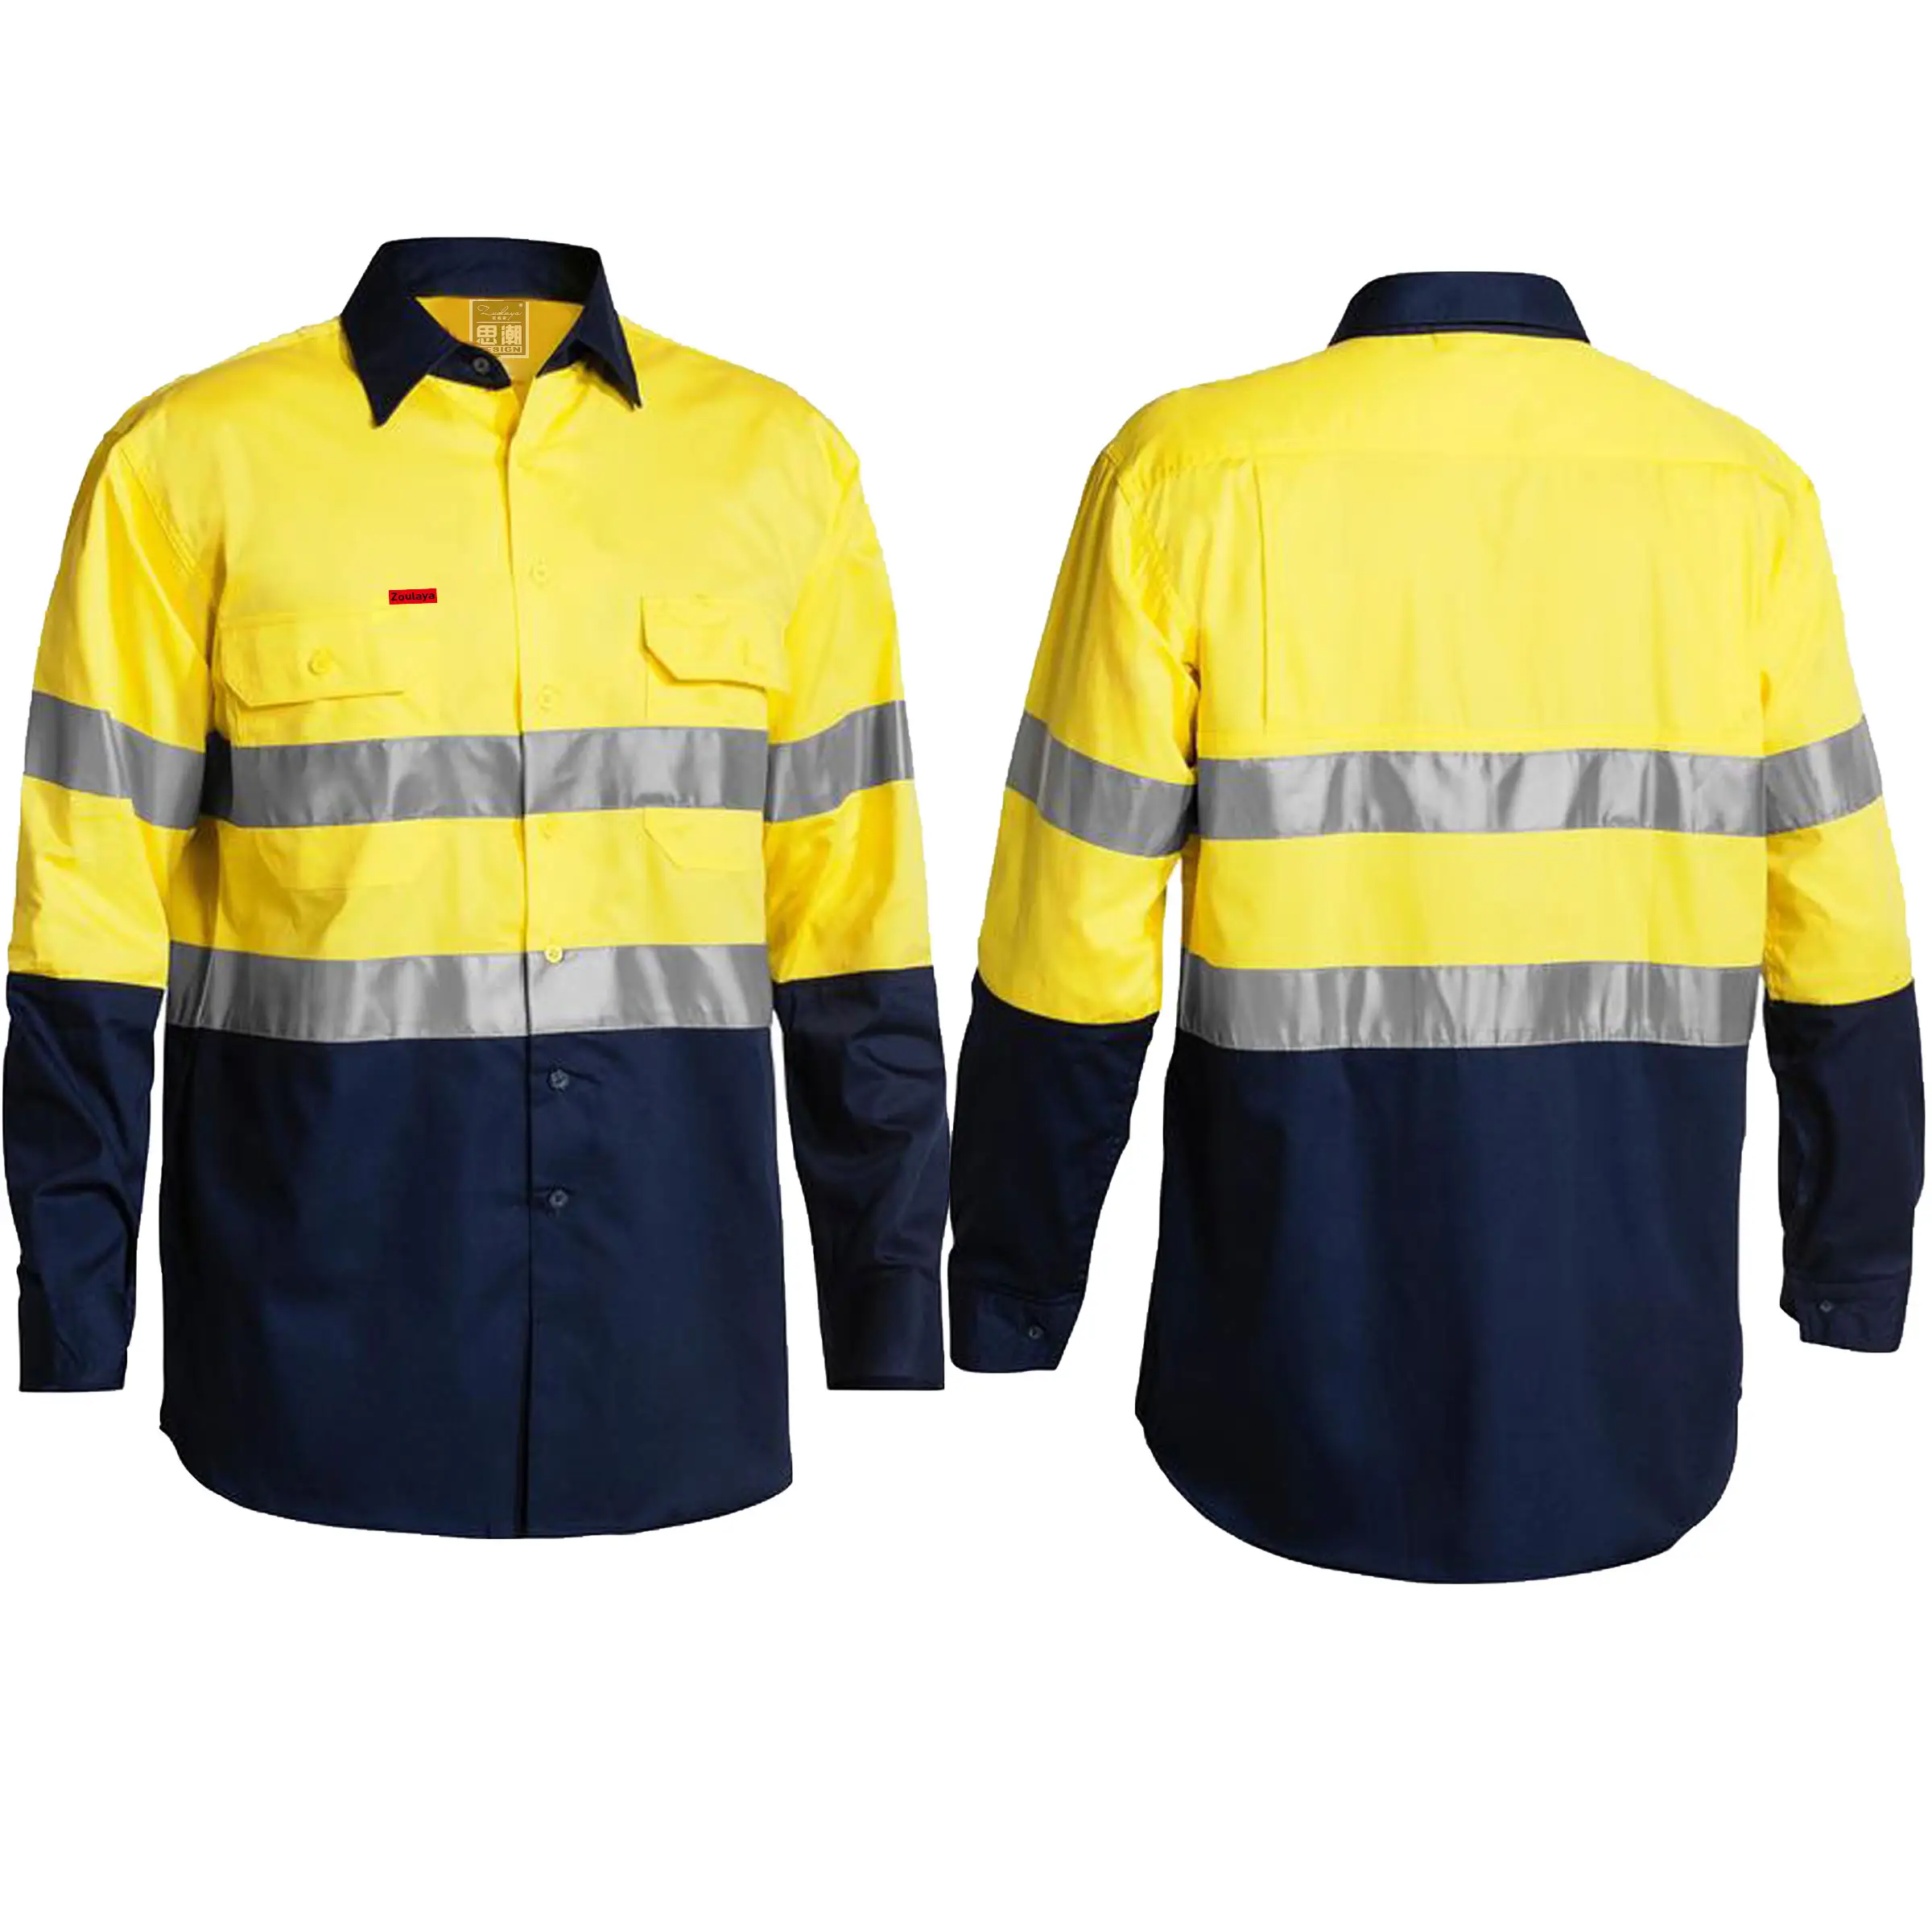 Camicia leggera ad alta visibilità camicia 100% cotone a maglia a manica lunga camicia di sicurezza riflettente uniforme da lavoro con ventilazione